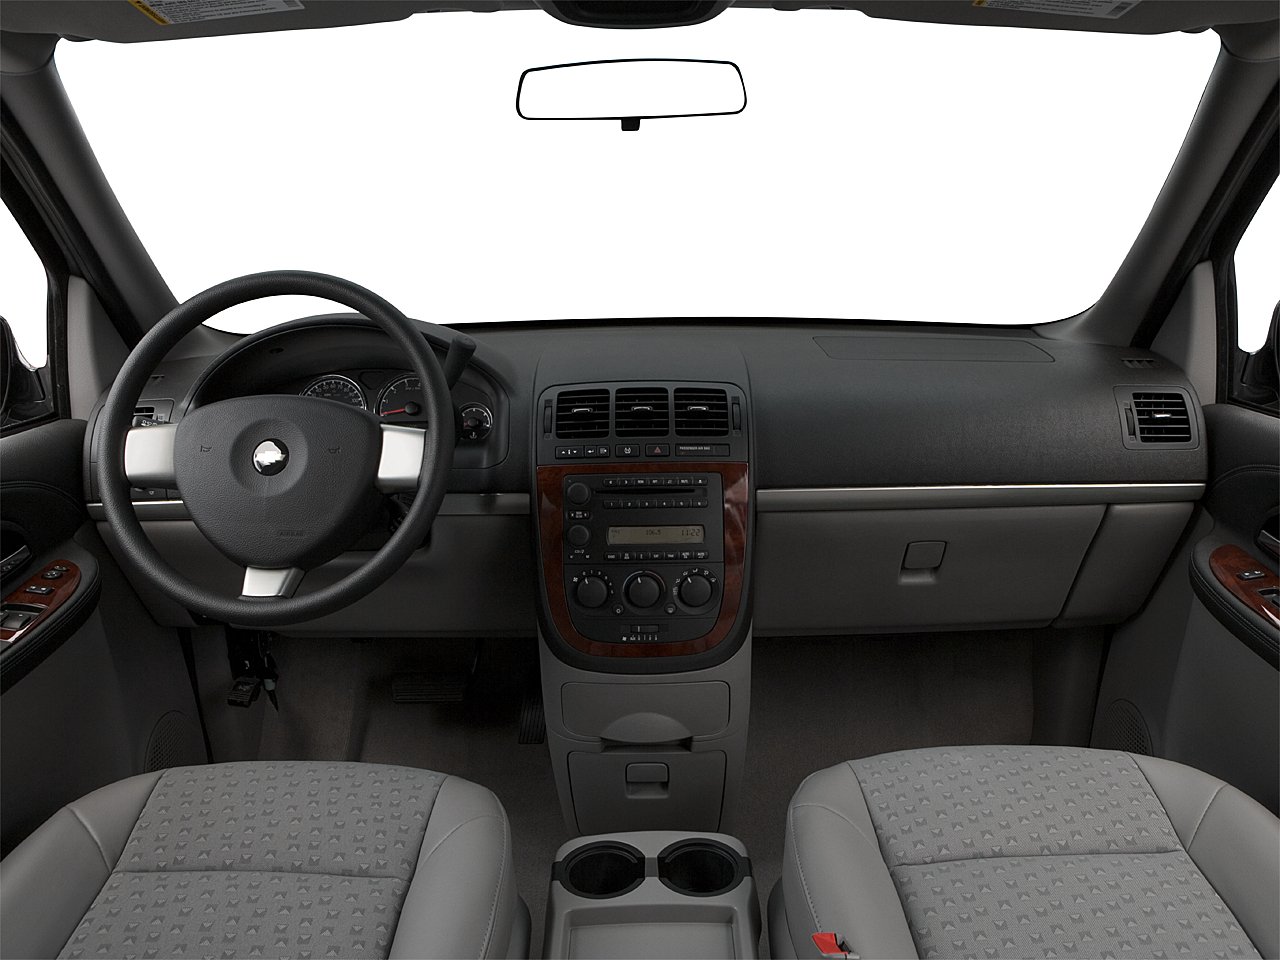 Chevrolet Uplander interior - Cockpit